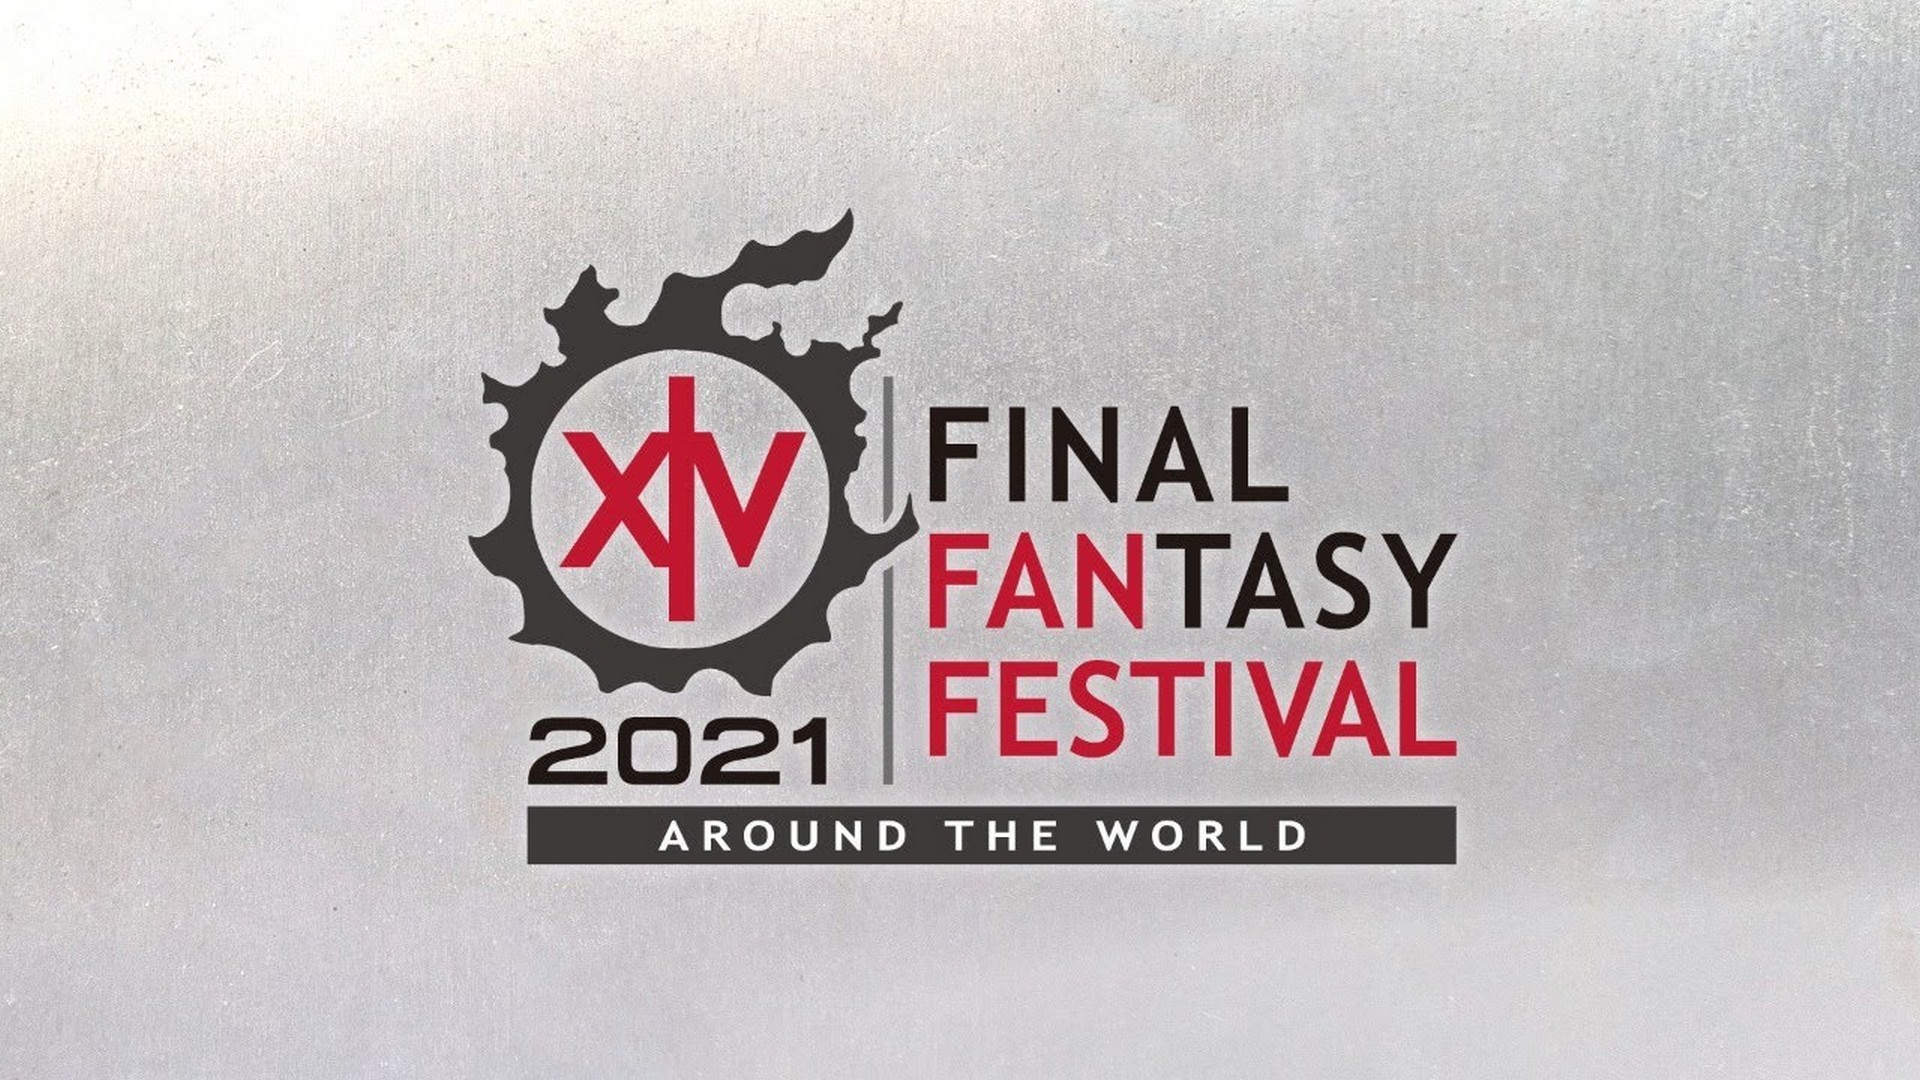 WRAP UP: Final Fantasy XIV Digital Fan Festival 2021